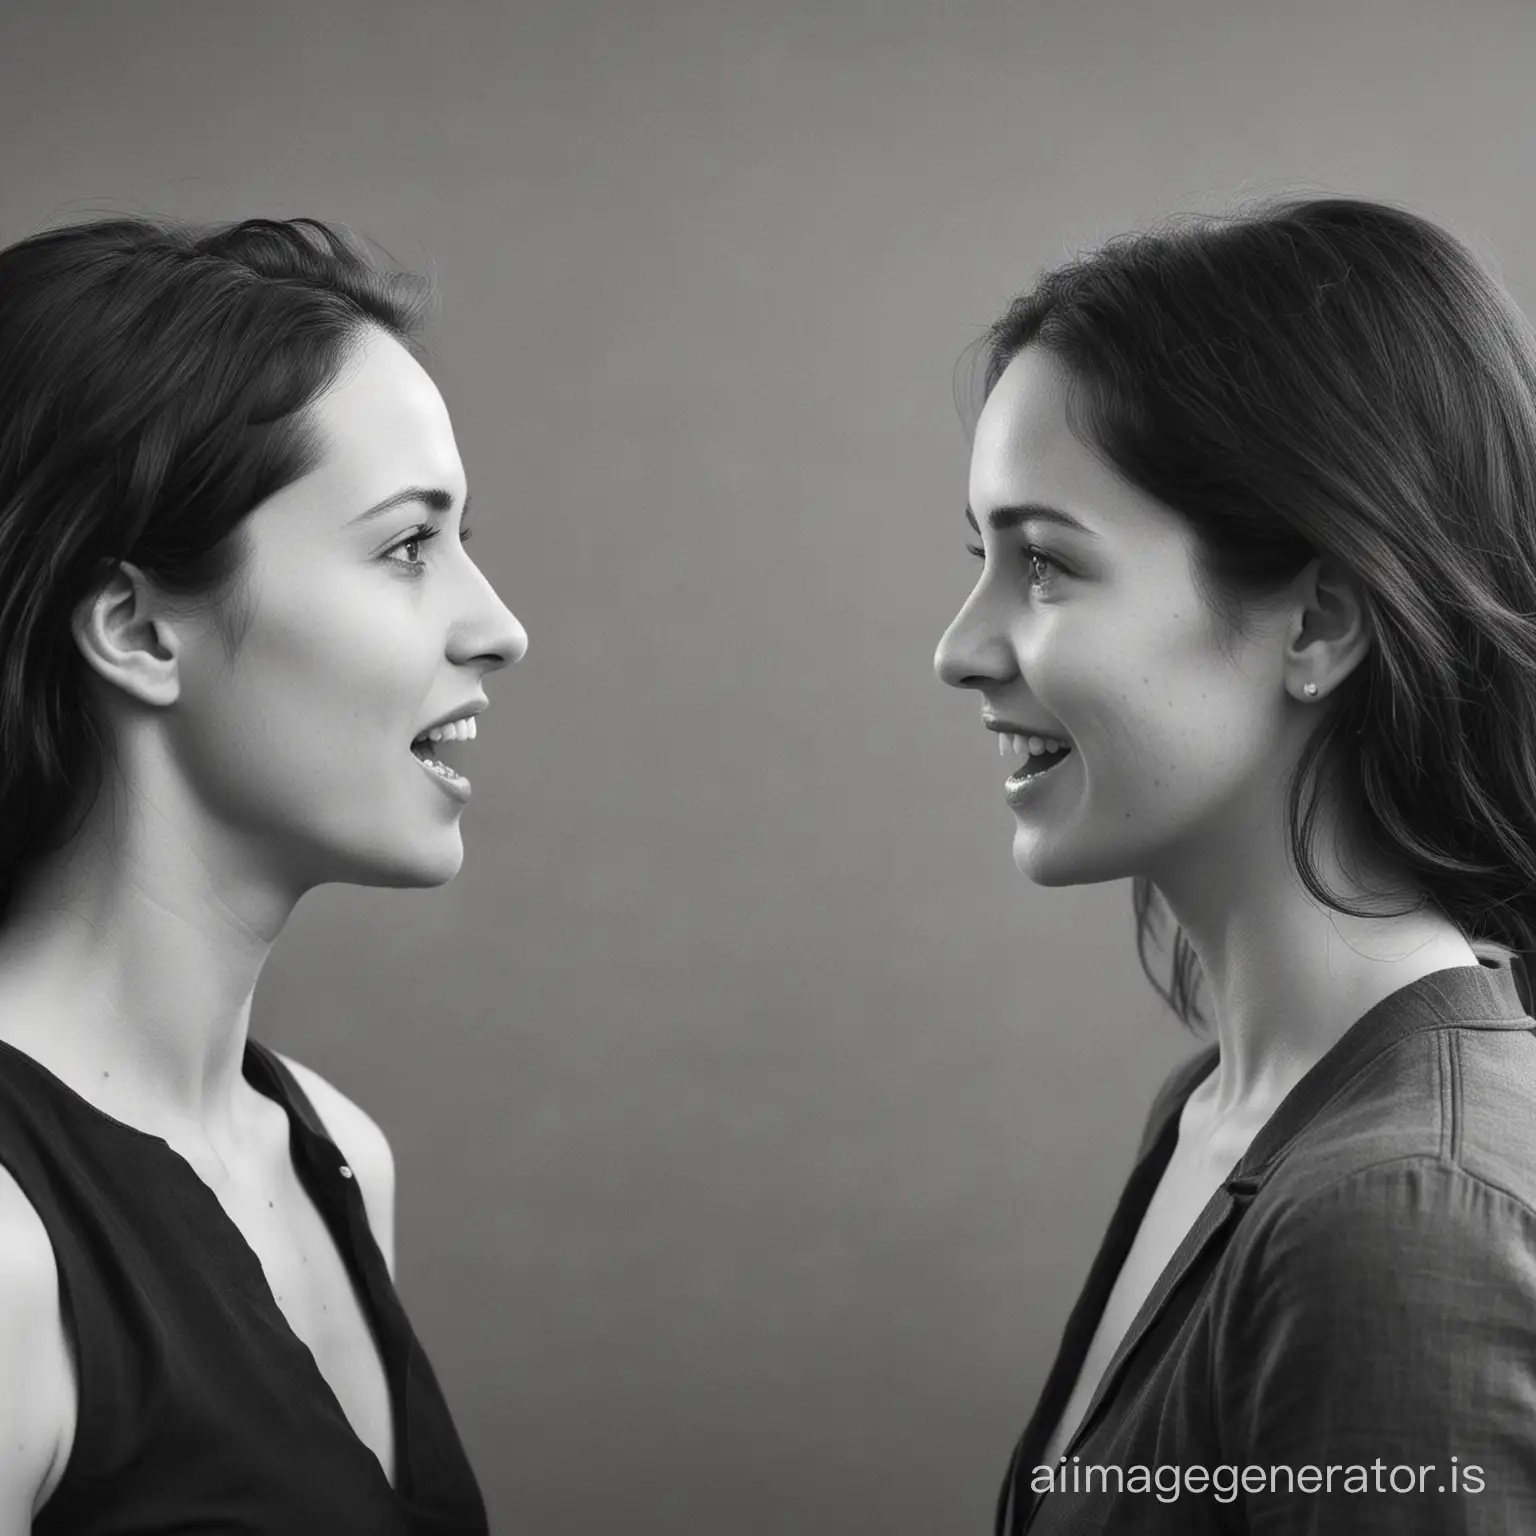 Two women speaking